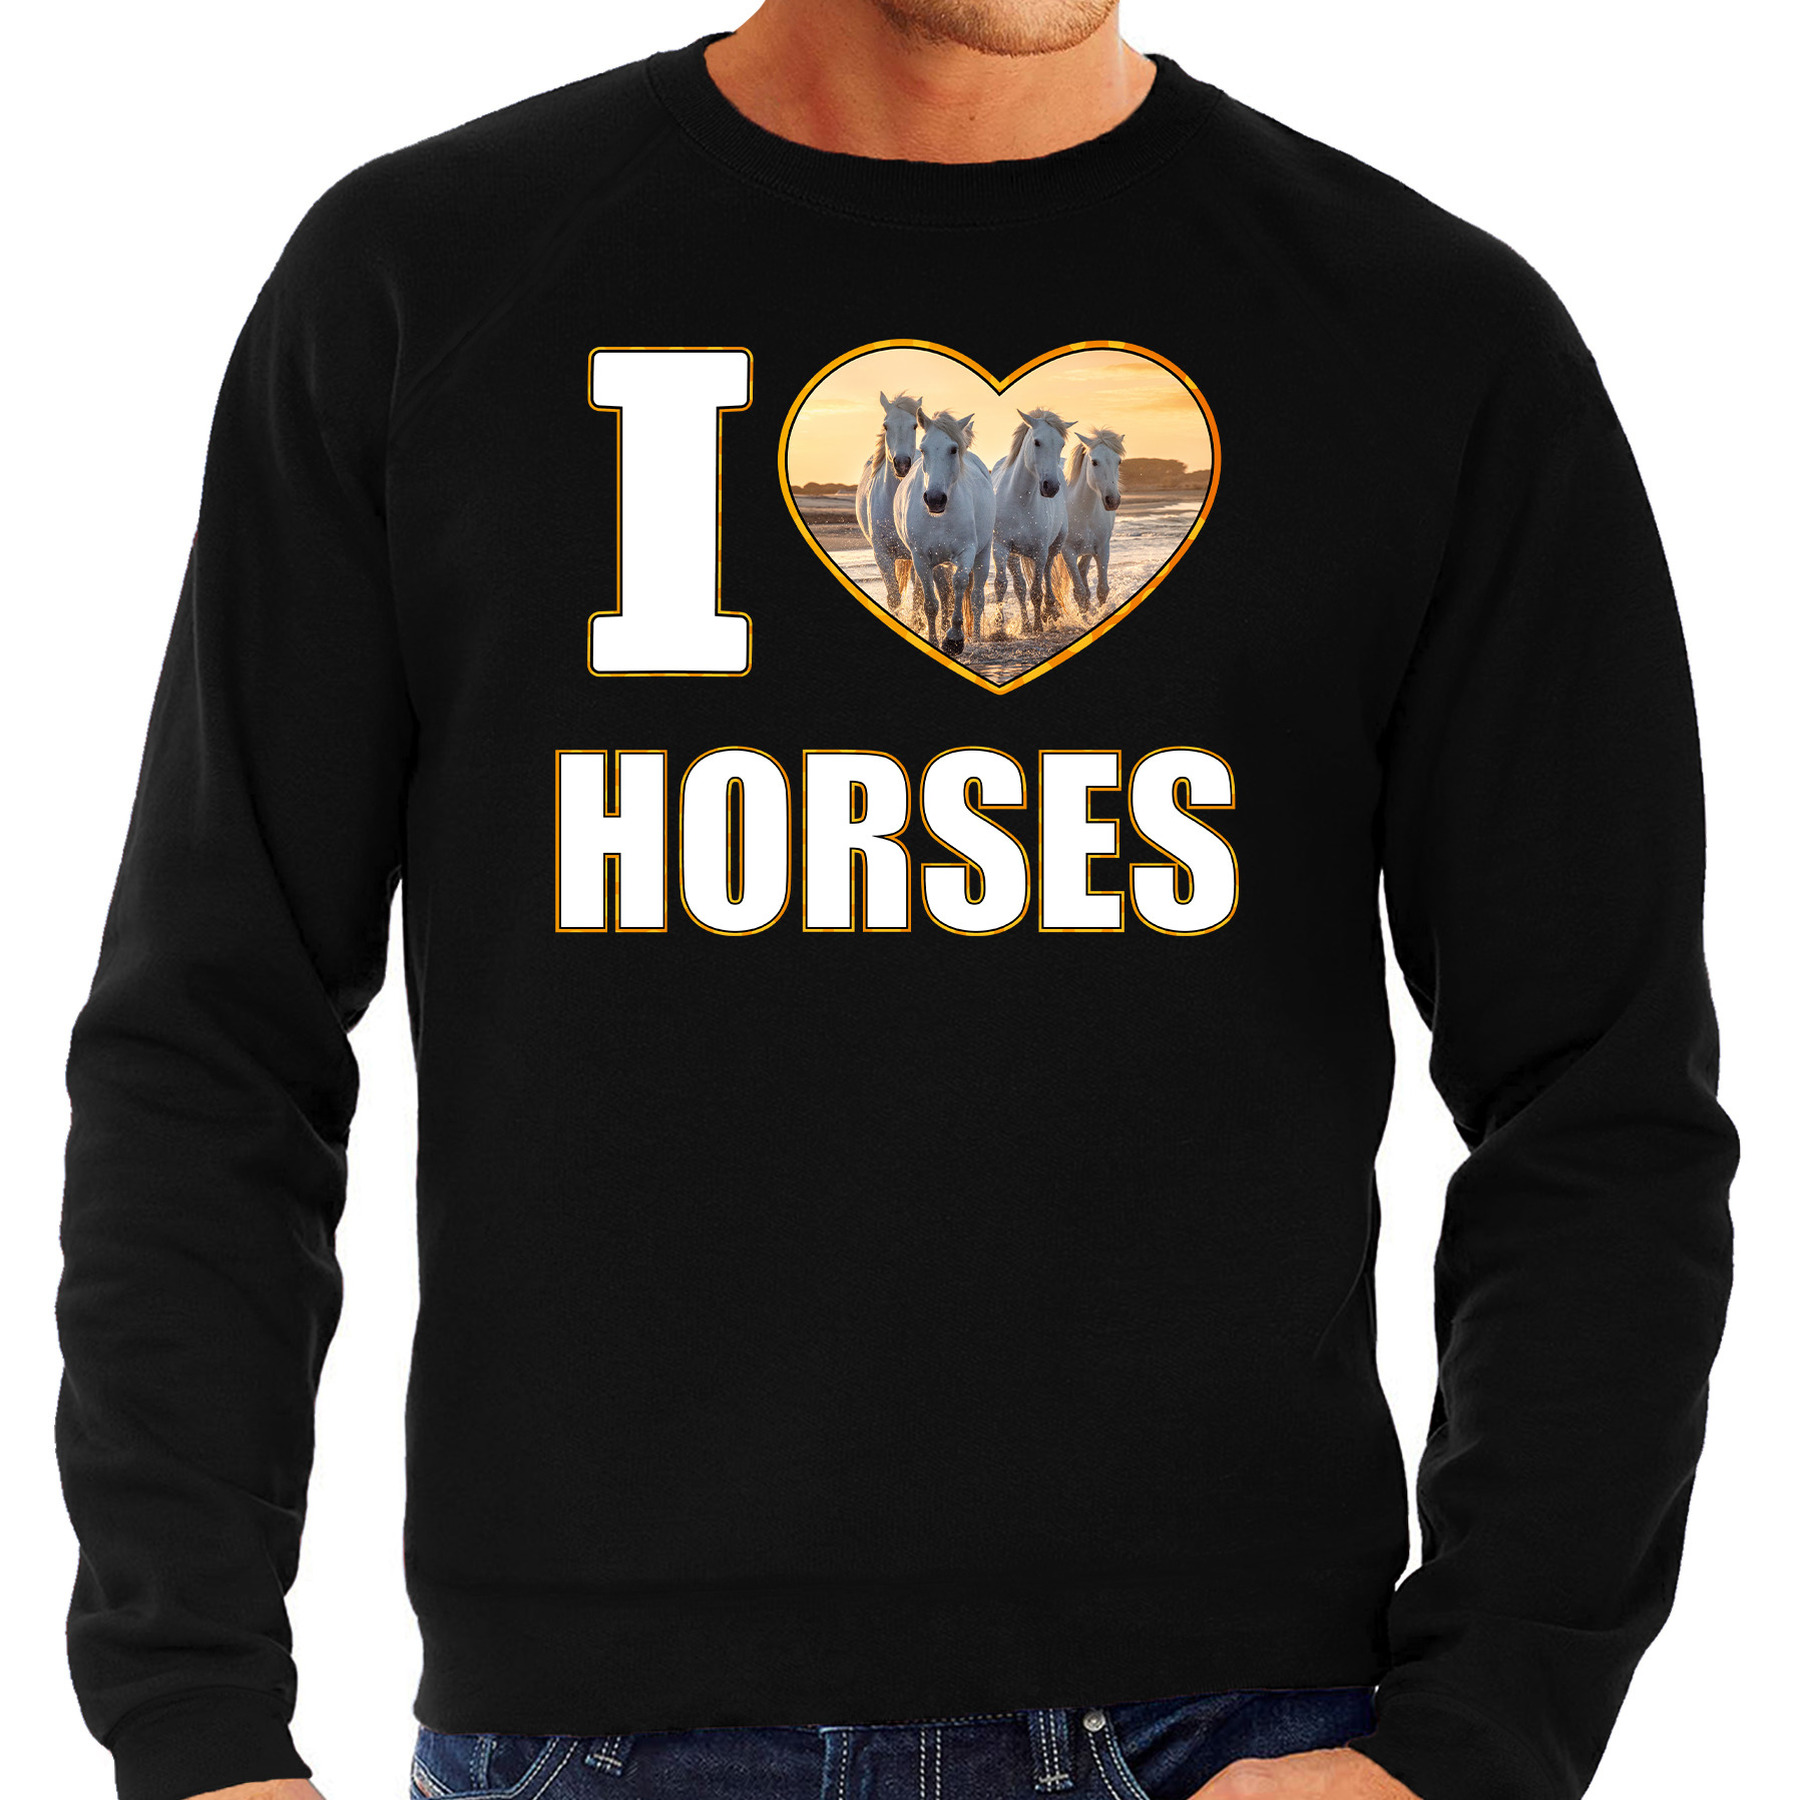 I love horses sweater - trui met dieren foto van een wit paard zwart voor heren